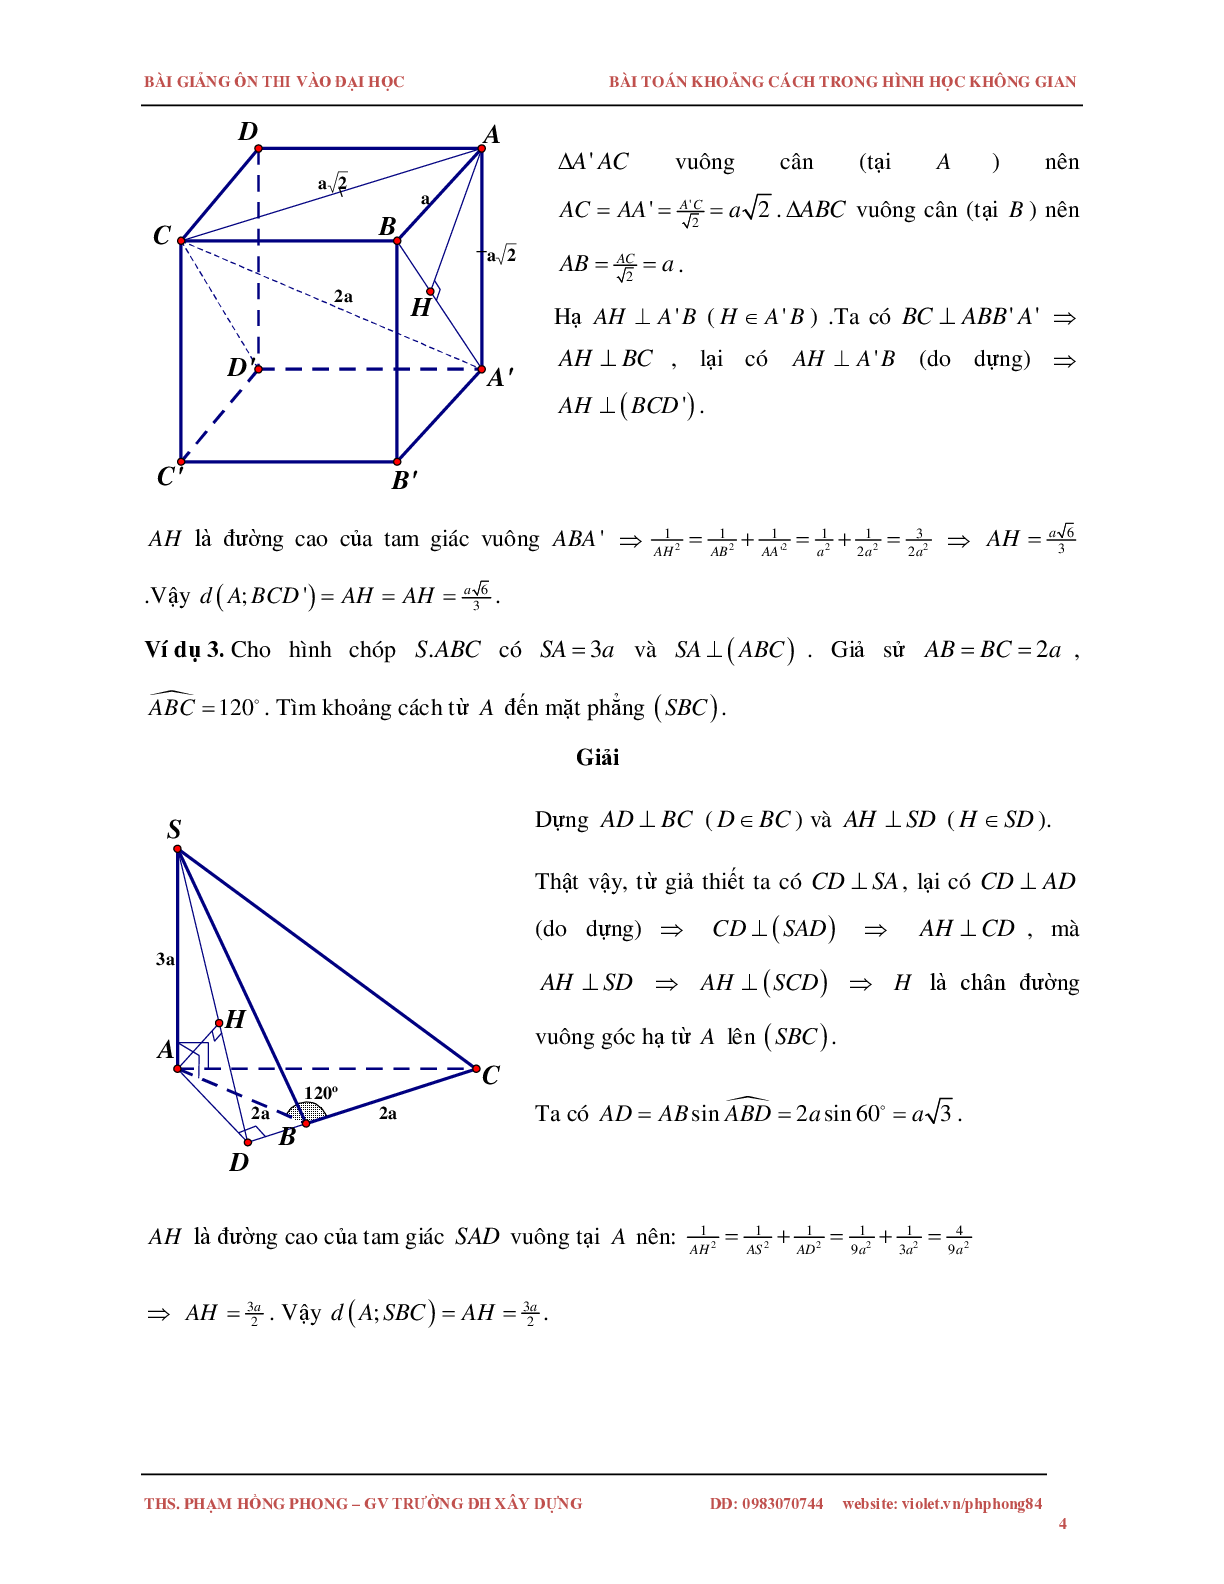 Bài toán về khoảng cách trong không gian (trang 4)